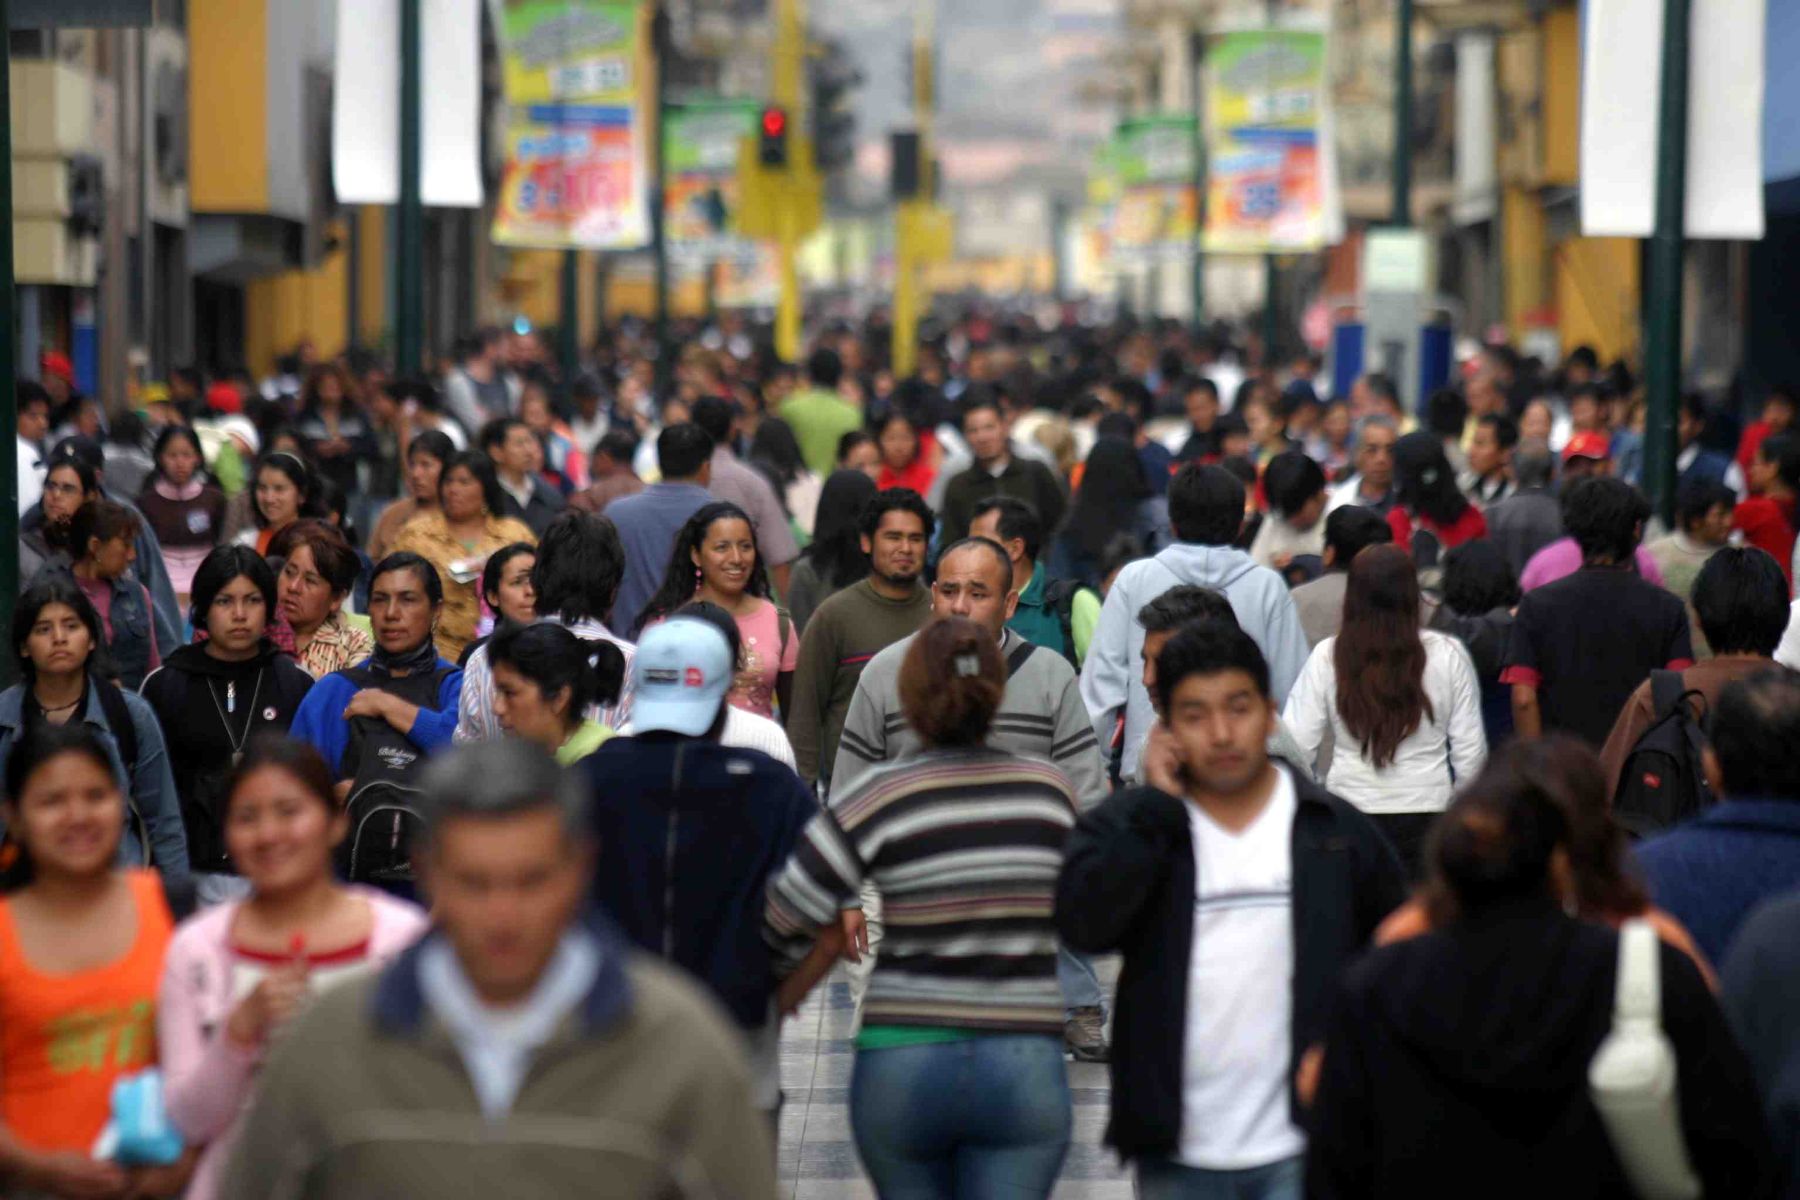 Actualmente, la población total del Perú asciende a 33 millones 726 mil habitantes, según informe del INEI.